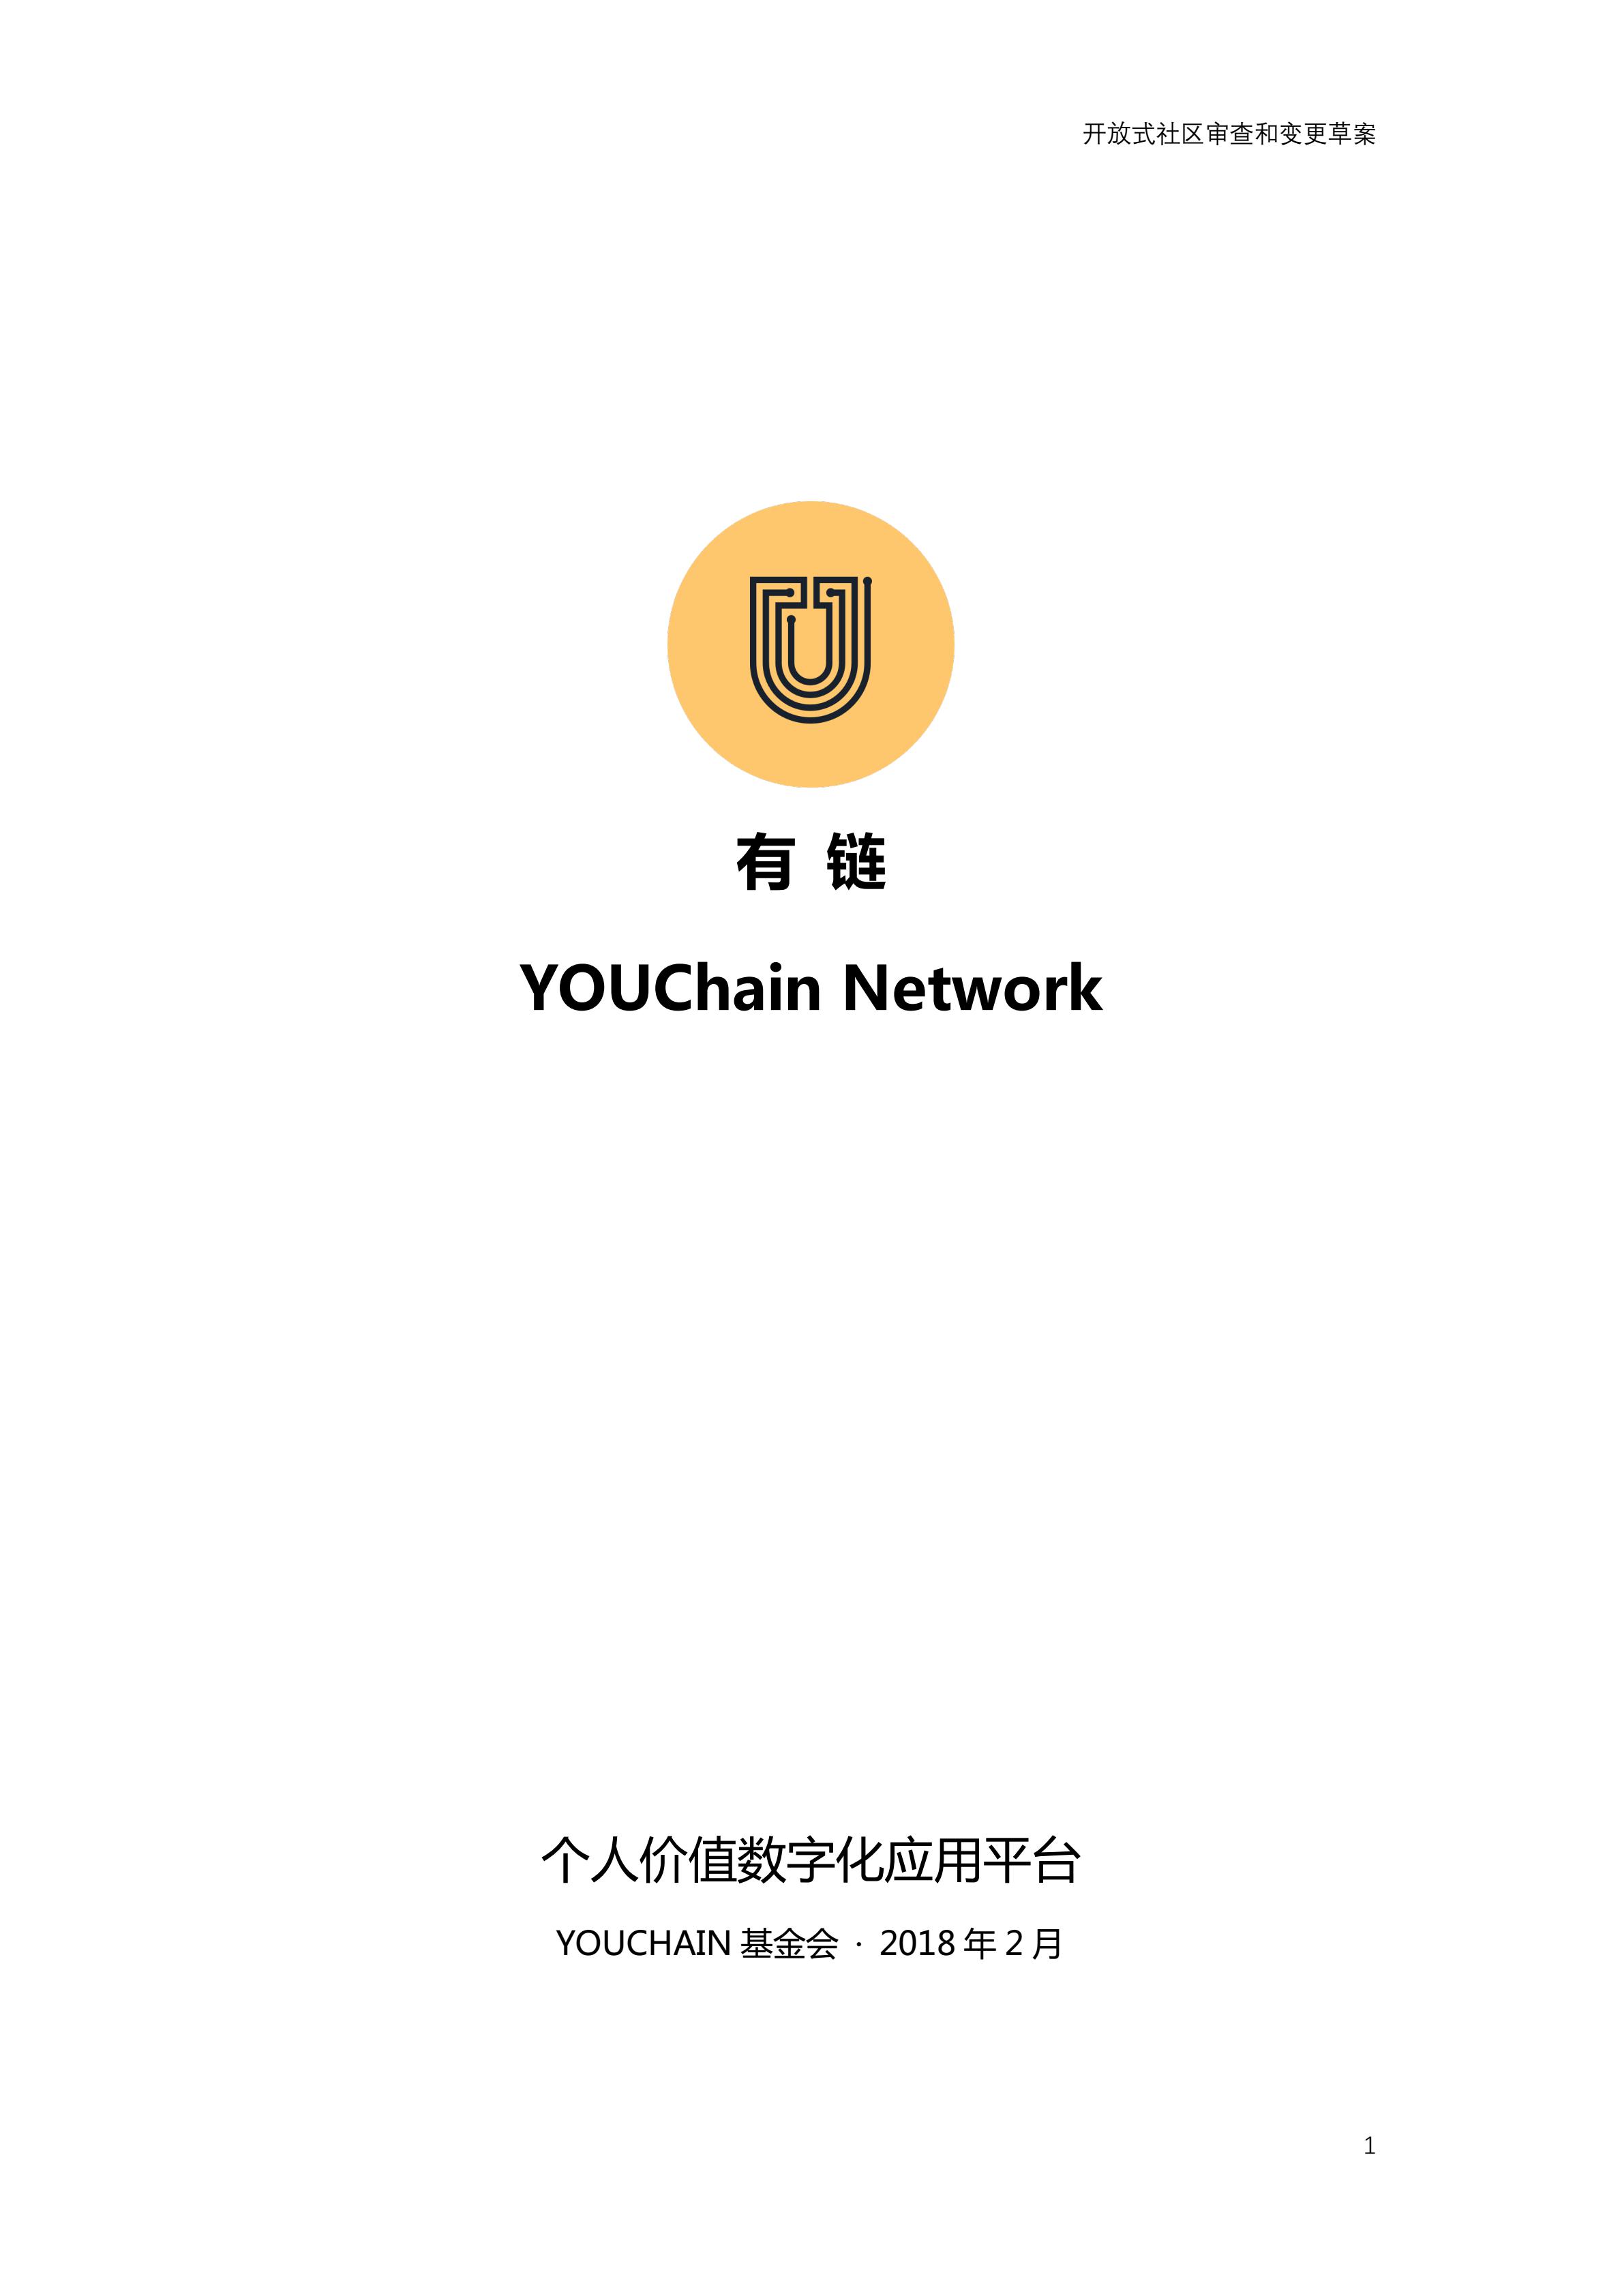 YOUchain-Whitepaper-ZH-1.2_00.jpg